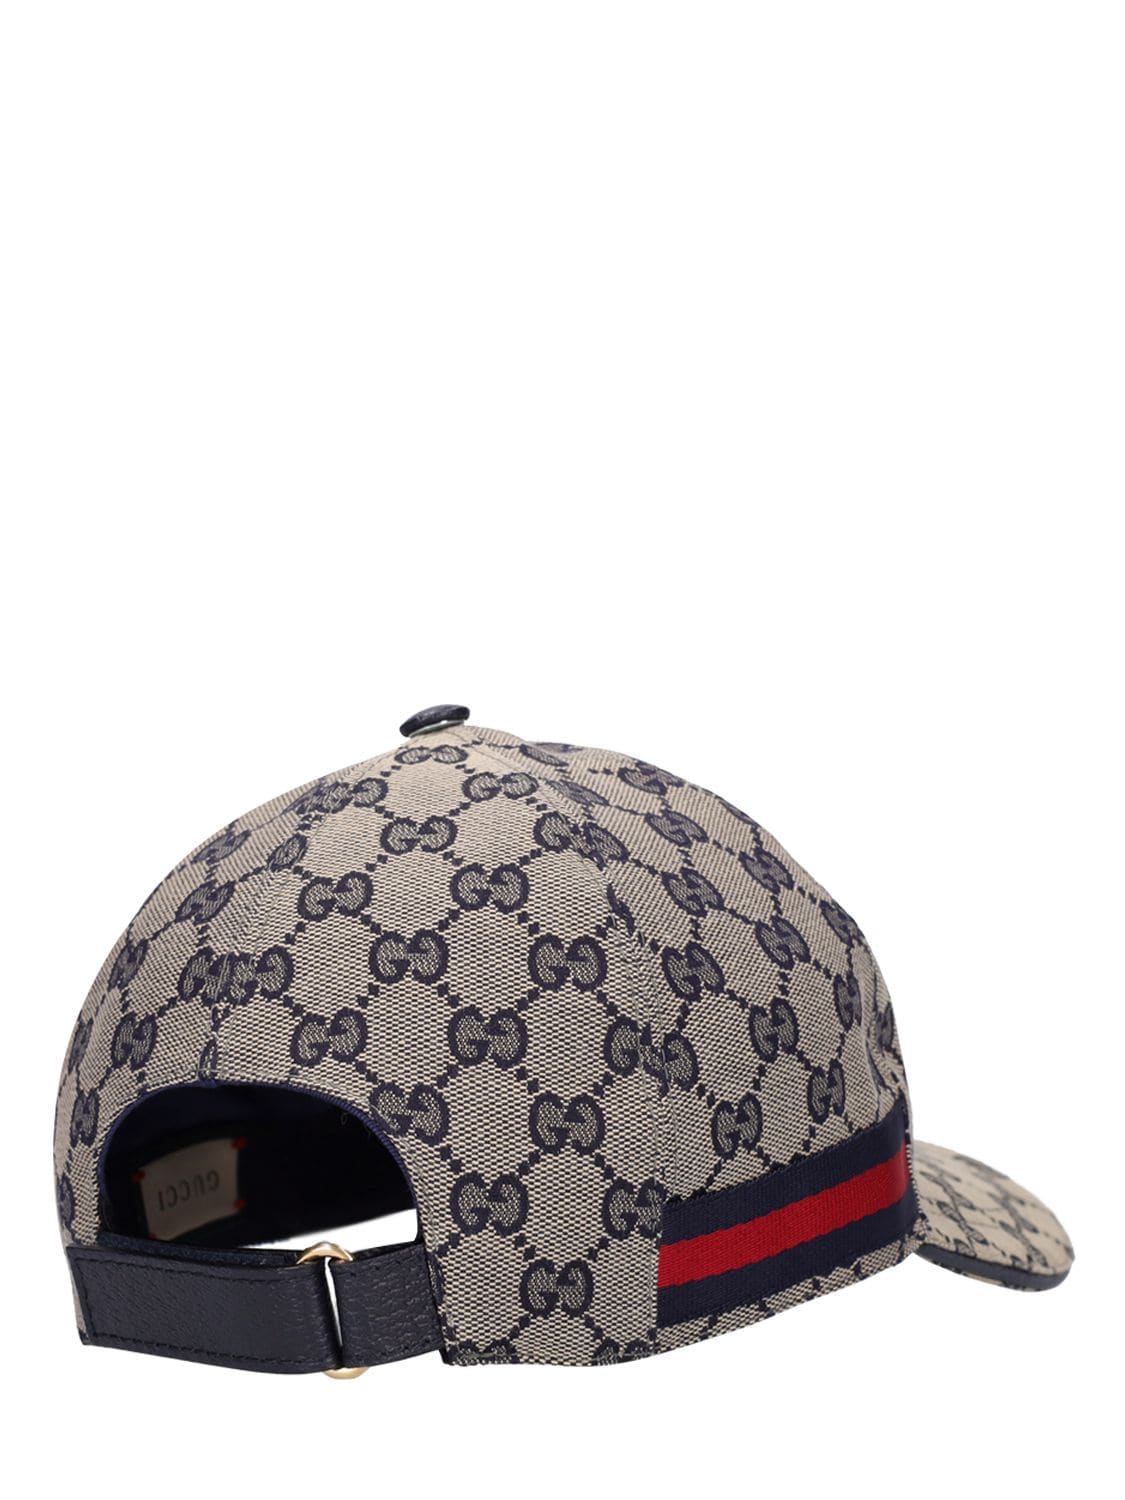 GUCCI Double G Webbing $78  Gucci cap, Gucci hat, Cloth bags